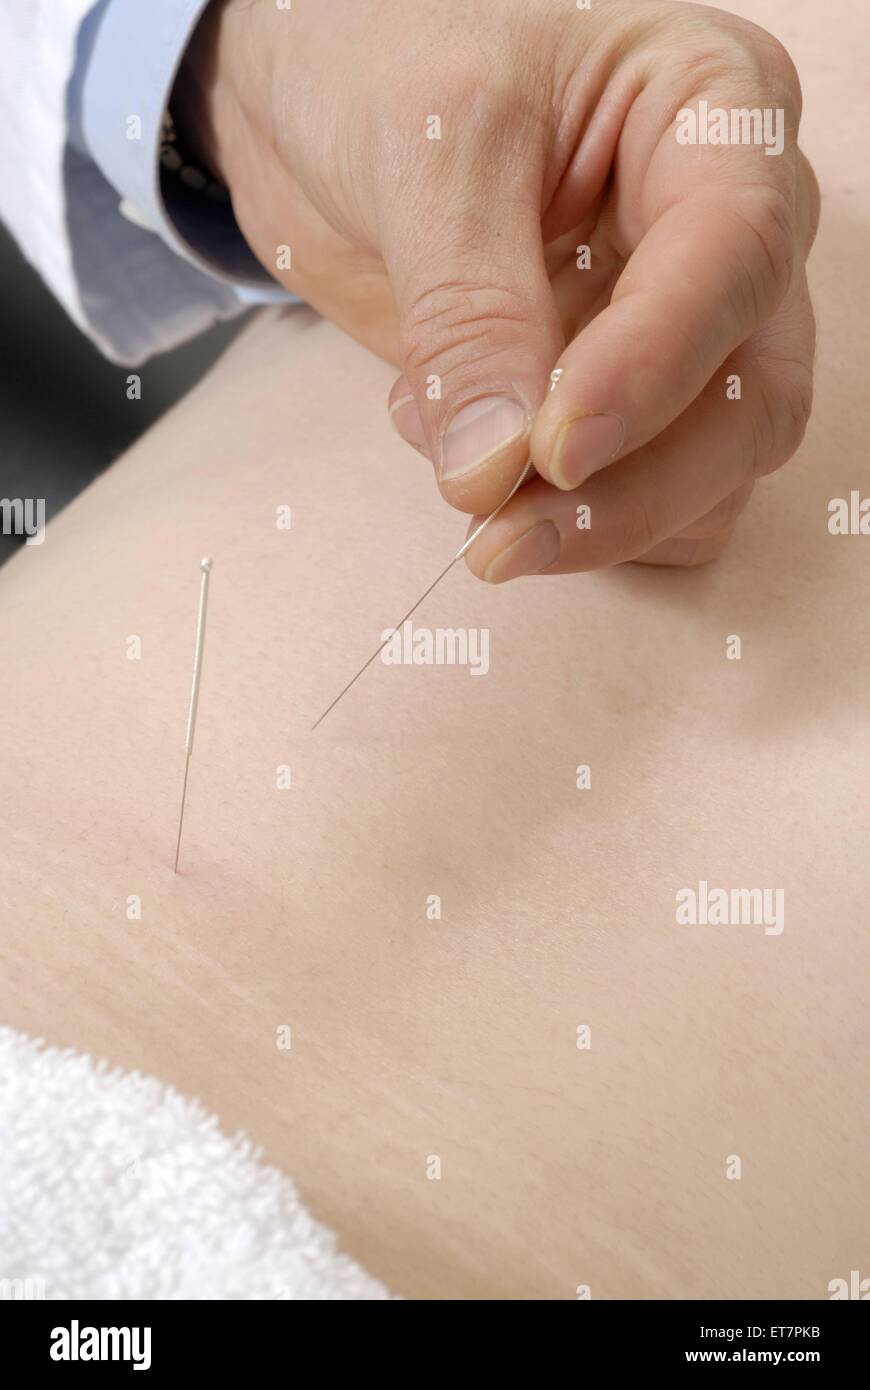 Akupunkturnadeln werden im Ruecken gesetzt | Acupuncture Needles on the Back Stock Photo